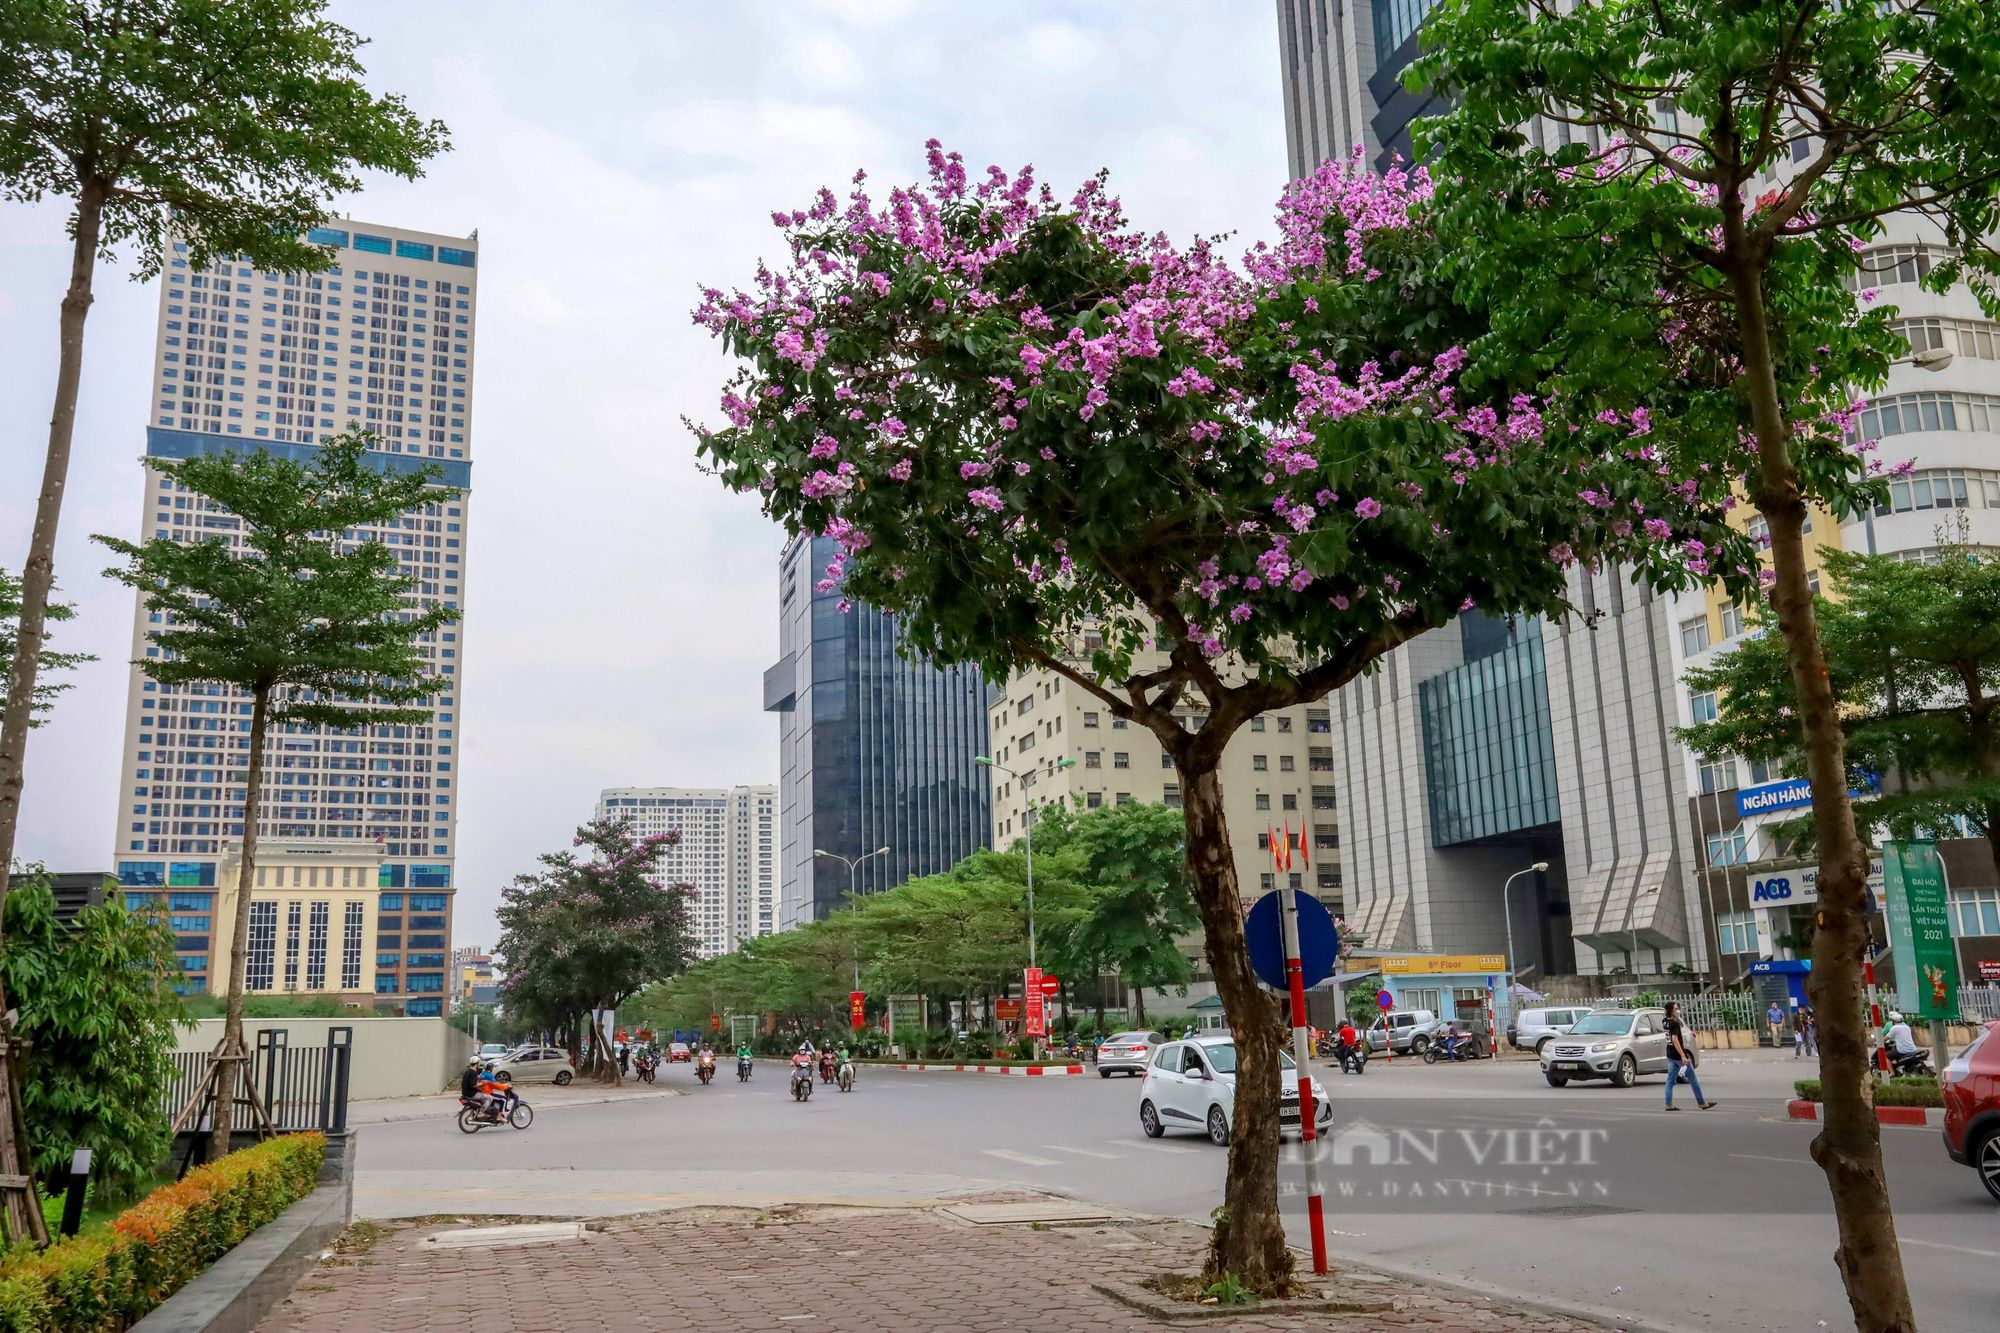 Ngỡ ngàng trước hình ảnh hoa bằng lăng nở rộ, tô sắc tím khắp phố phường Hà Nội - Ảnh 9.